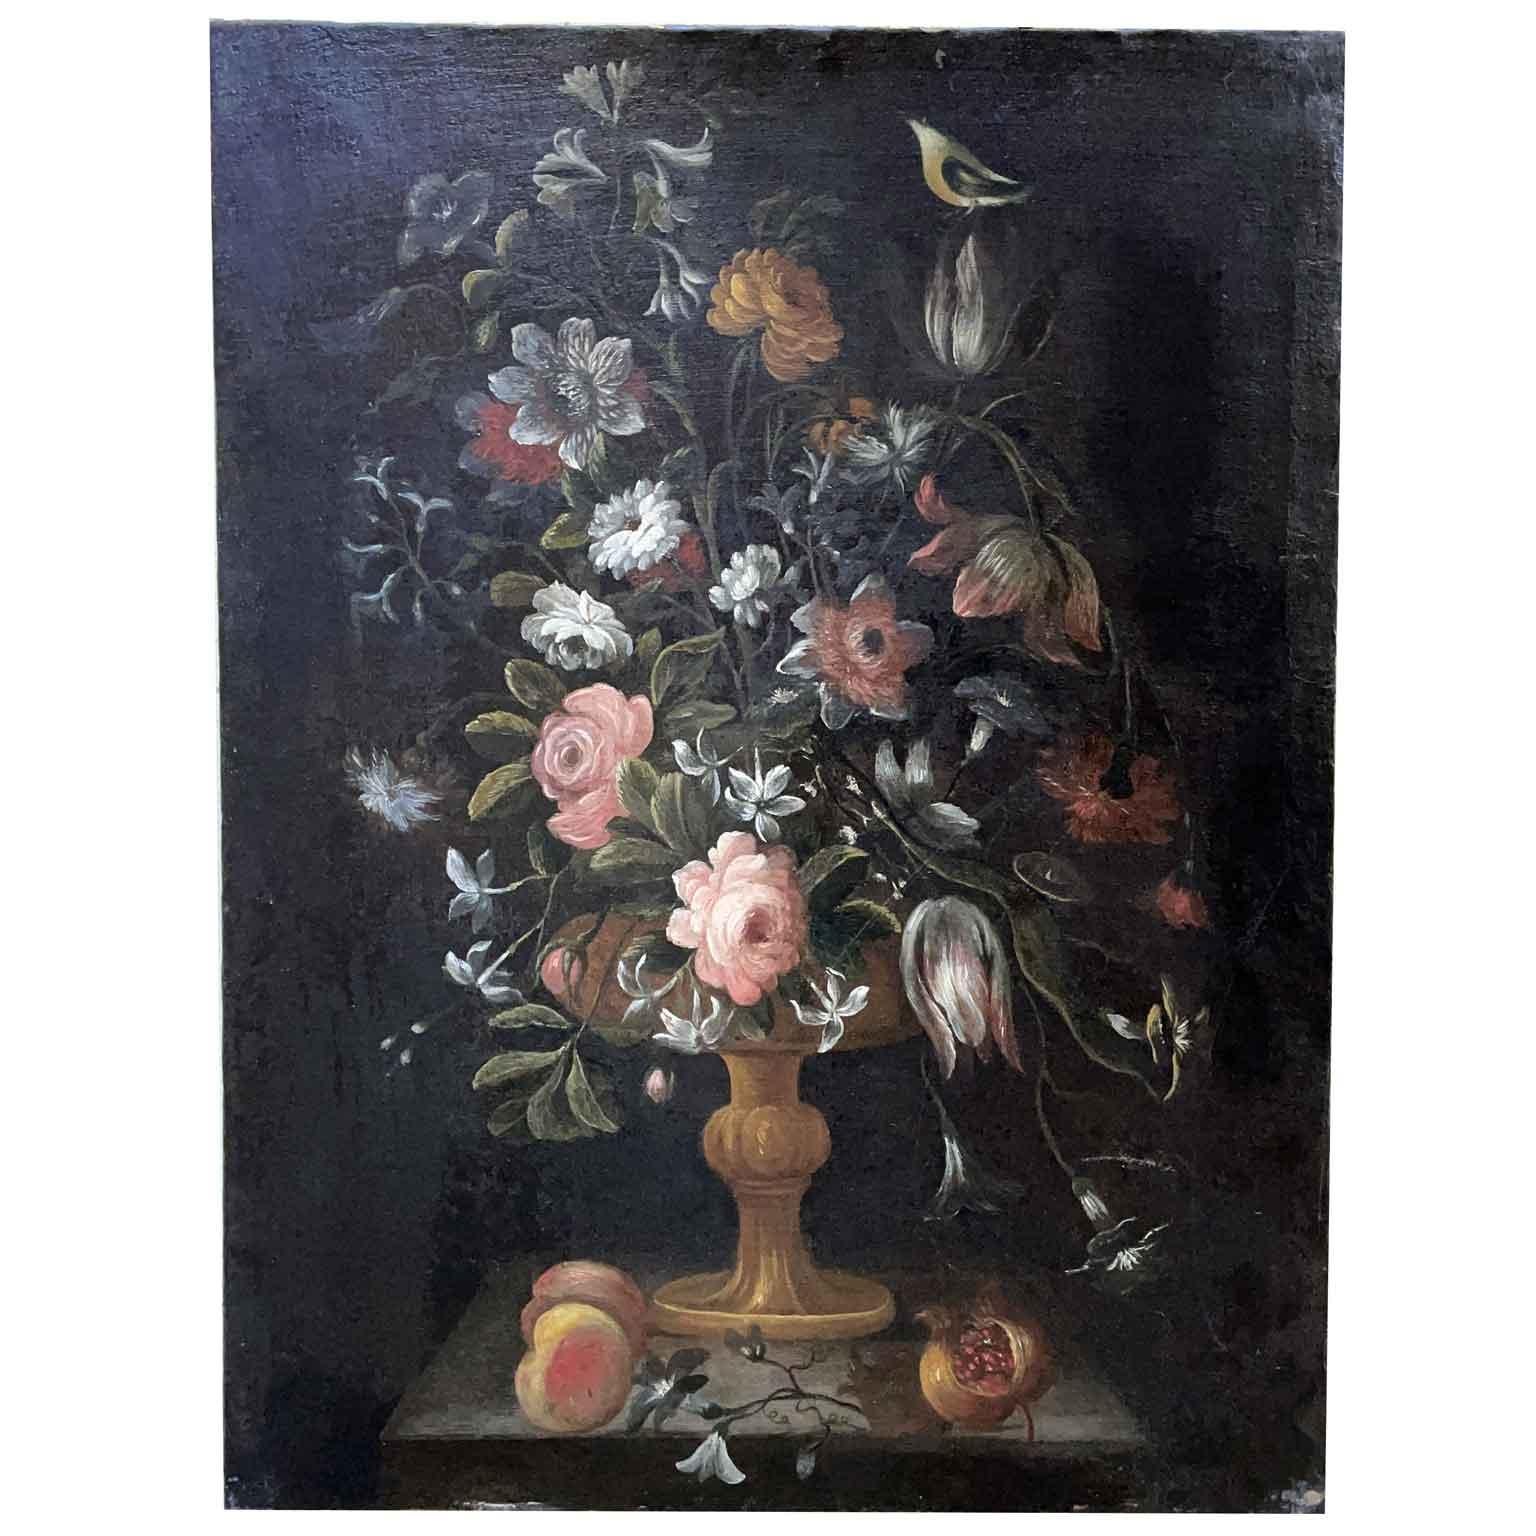 Nature morte di fiori in vaso di scuola italiana del XVII secolo,  coppia di due dipinti senza cornice.  Olio su tela con sfondo scuro e fiori finemente definiti.
Questi dipinti, natura morta di fiori barocchi di scuola italiana sono caratterizzati